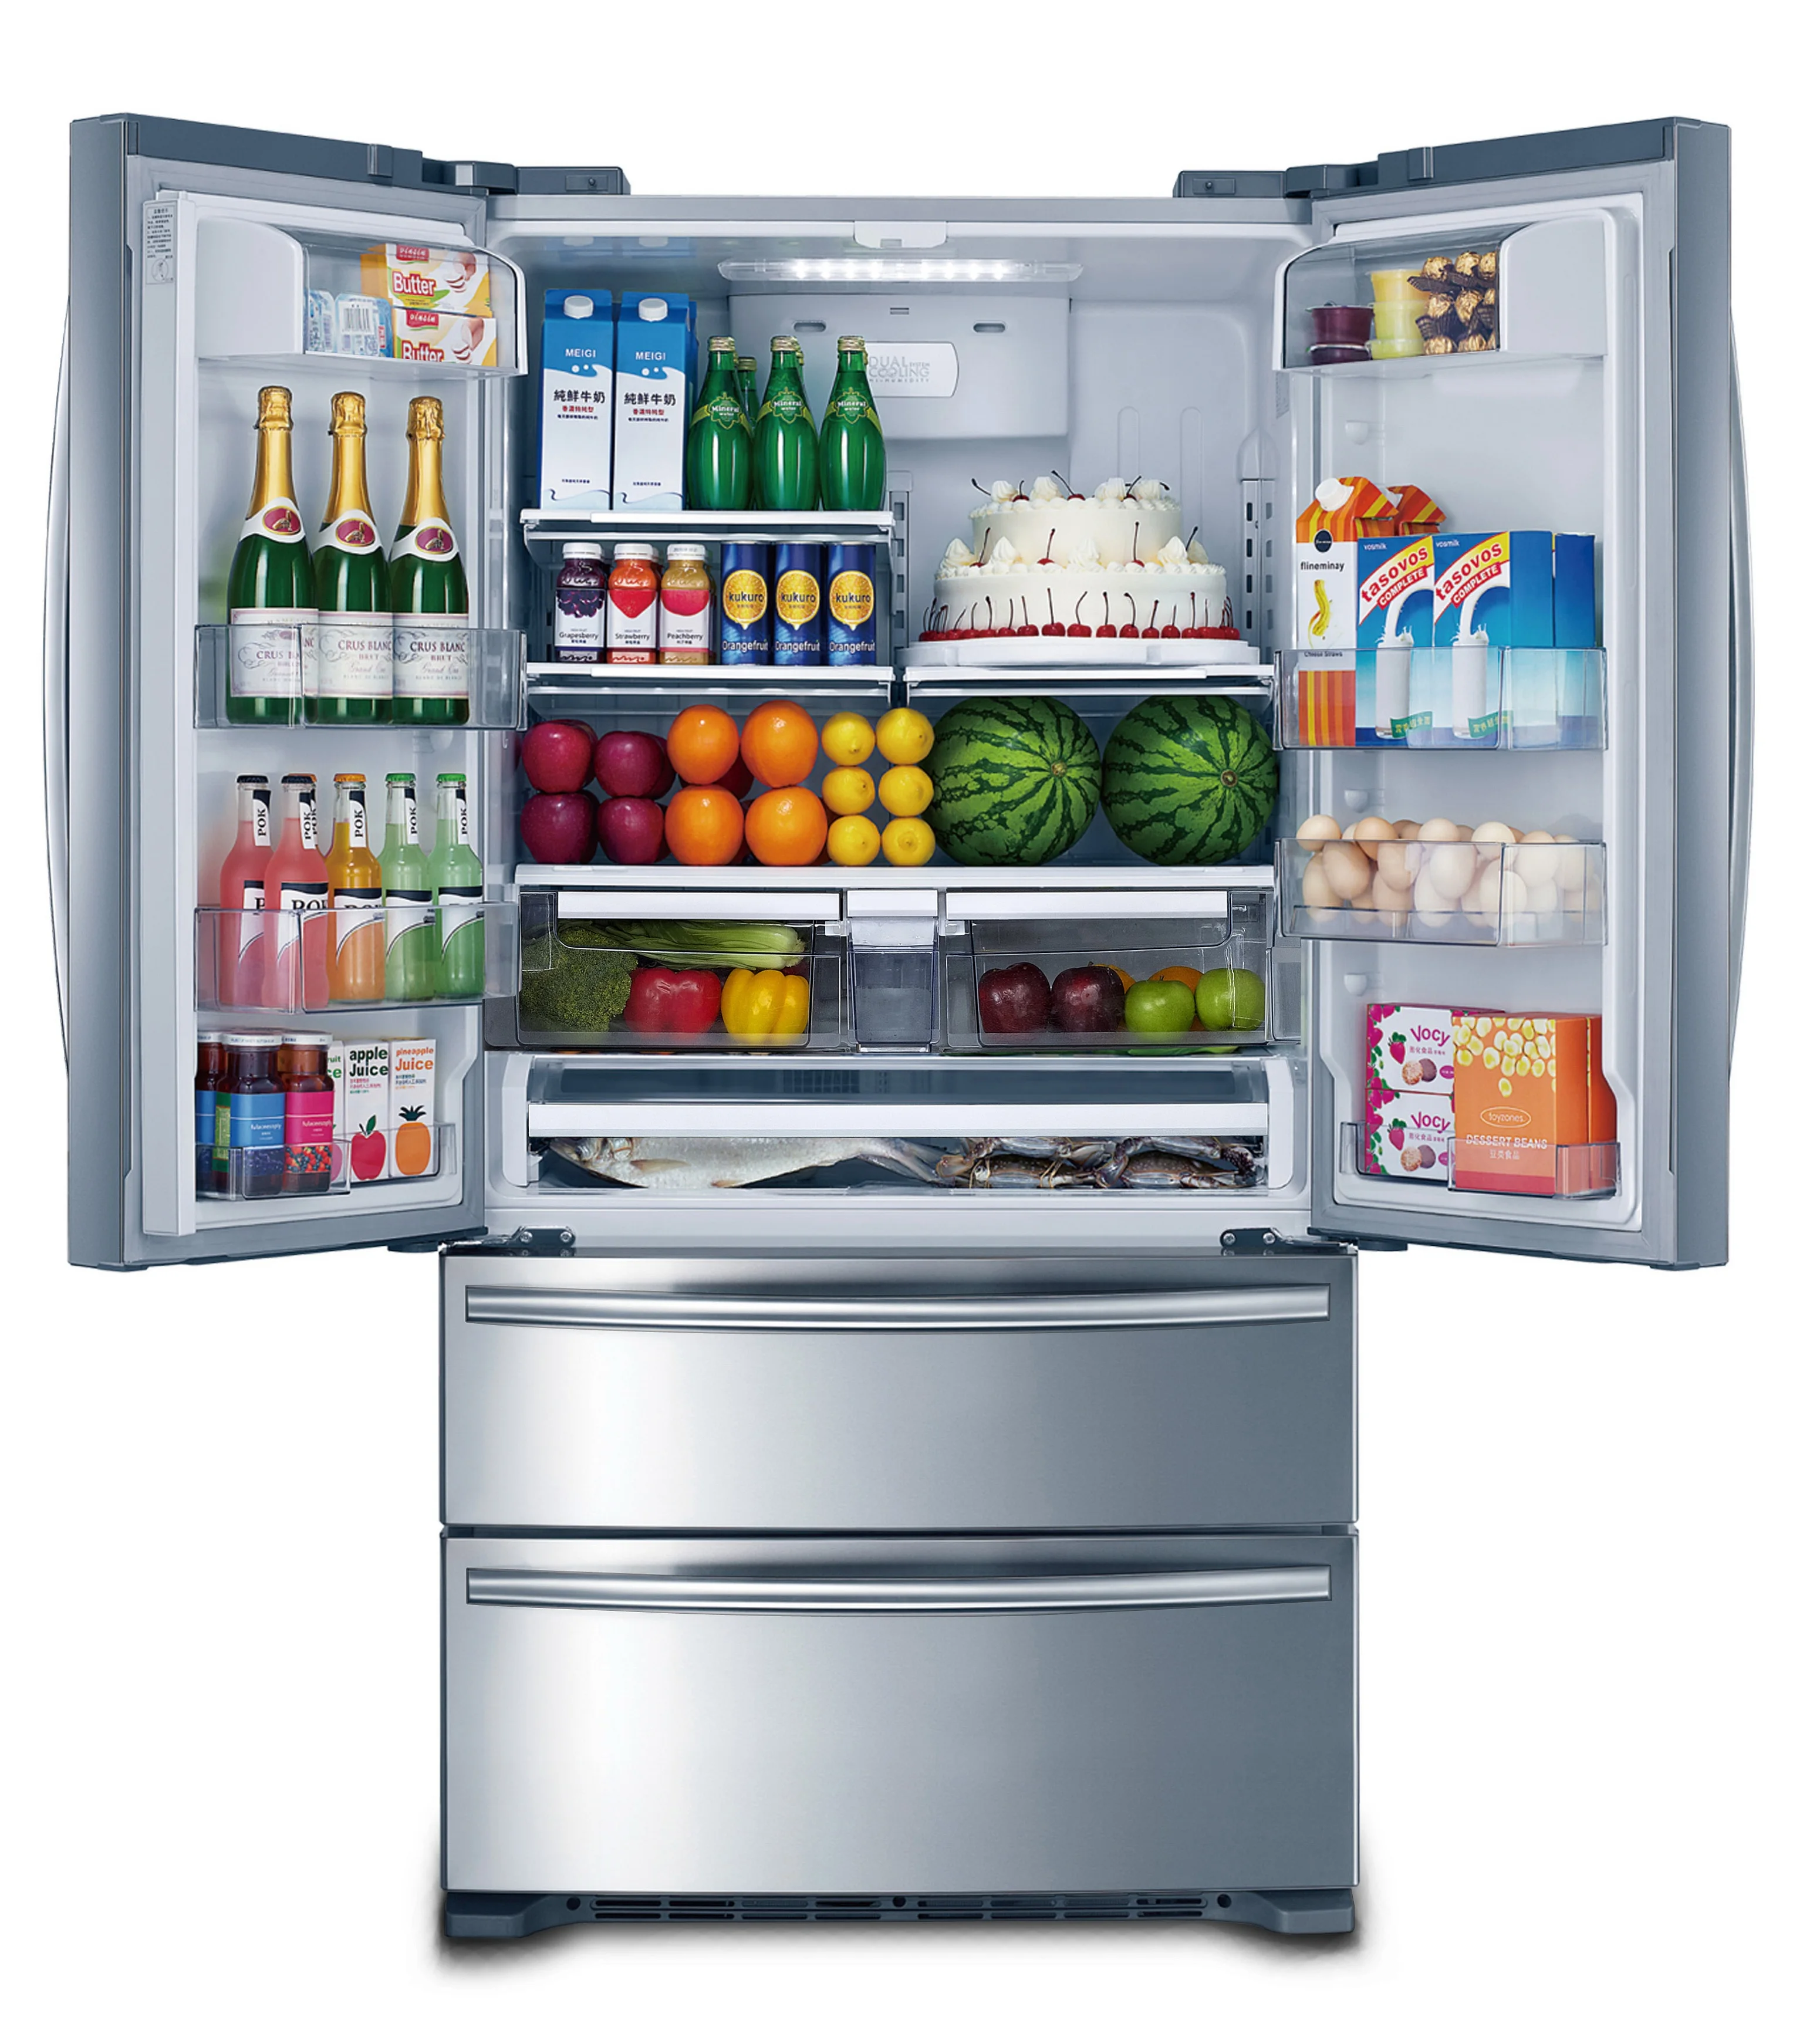 Купить холодильник в алматы. Холодильник Freezer Refrigerator. Холодильник трехкамерный Hyundai cm4045fix total no Frost, French Door, нержавеющая сталь. Холодильник Hi hcd020601w. Система ноу Фрост в холодильнике.